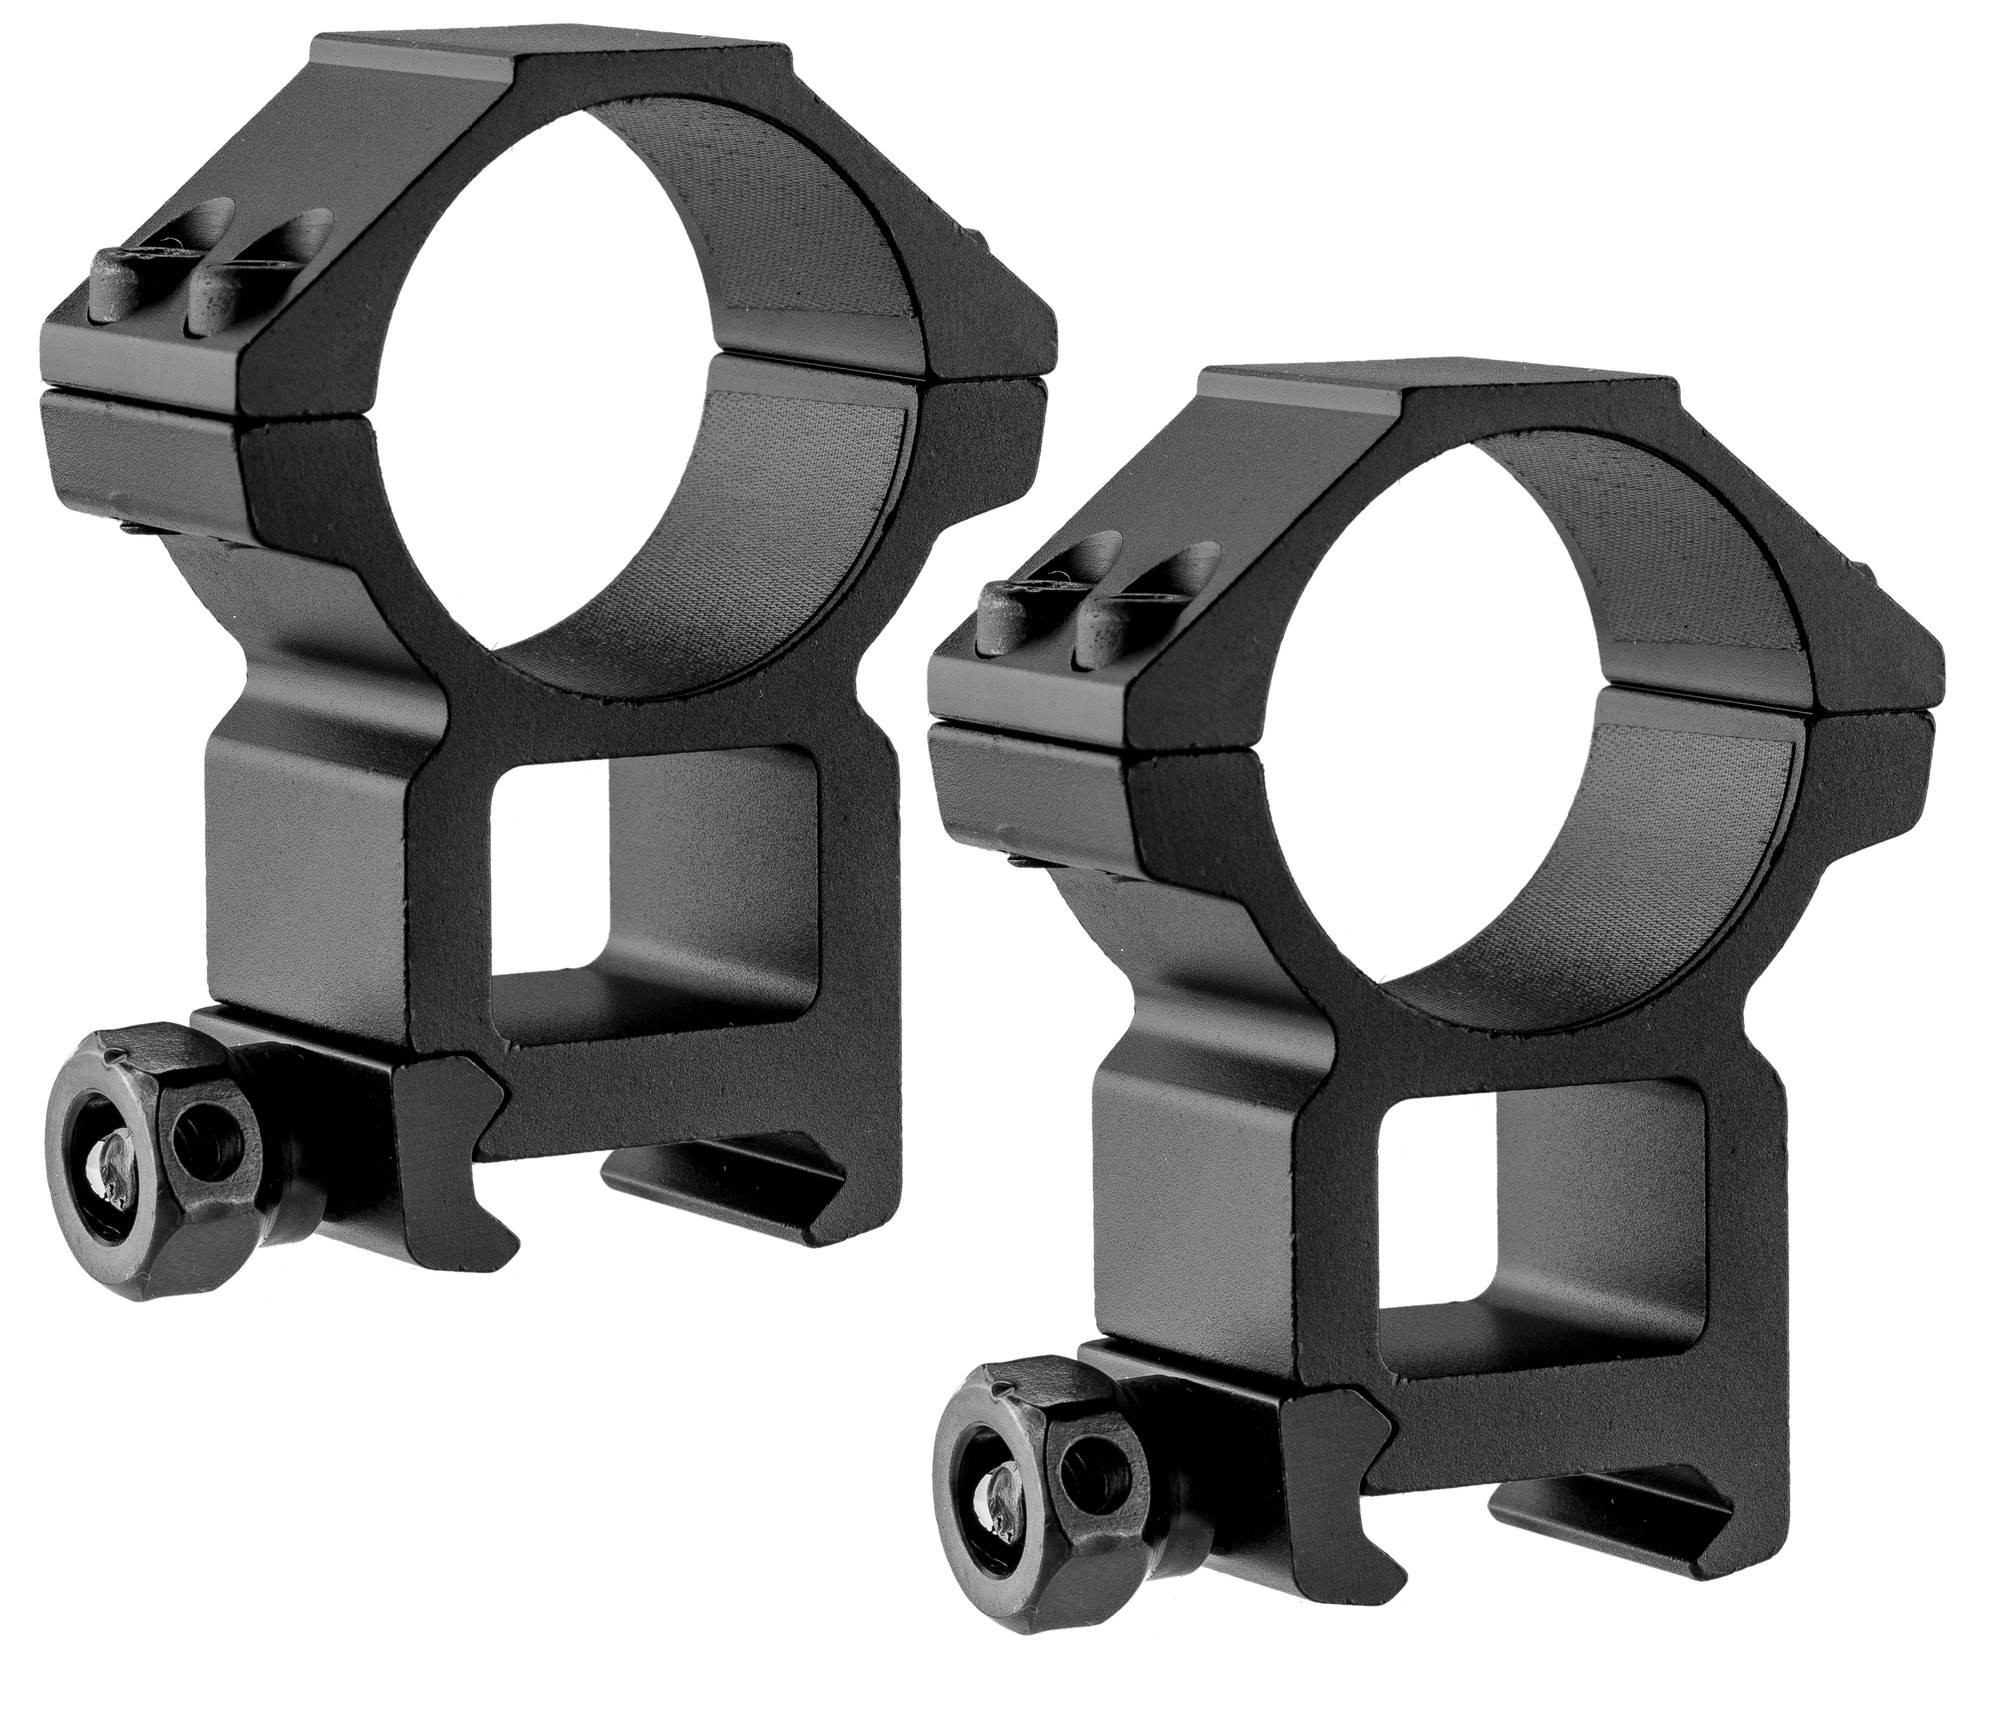 UTG - Montage Haut rail Picatinny pour lunette de visée Ø30mm - Aluminium CNC